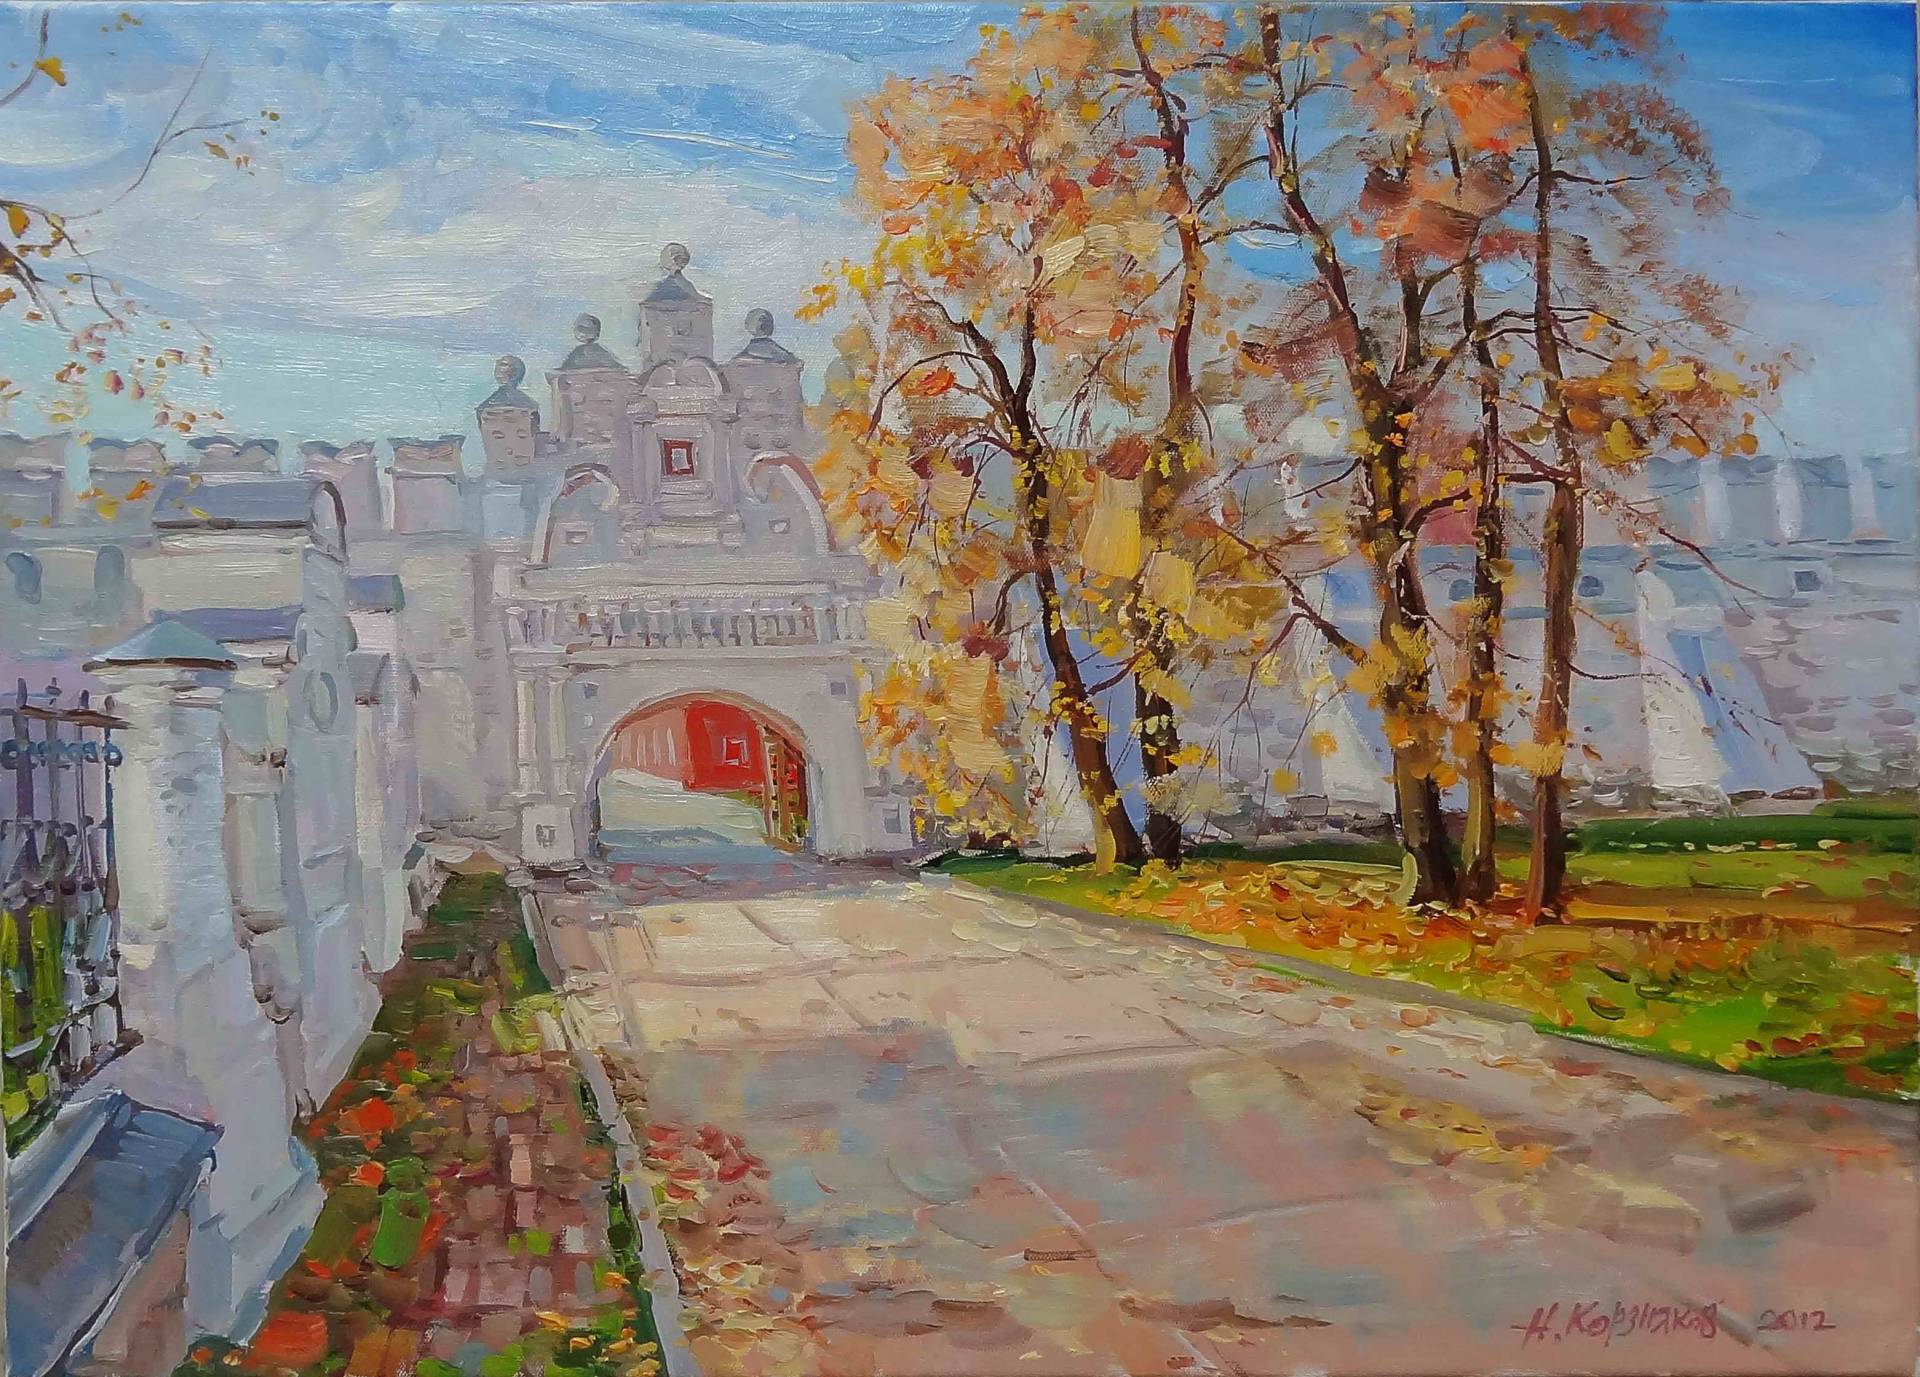 By Kremlin Entrance - 1, Nikolay Korznyakov, 买画 油